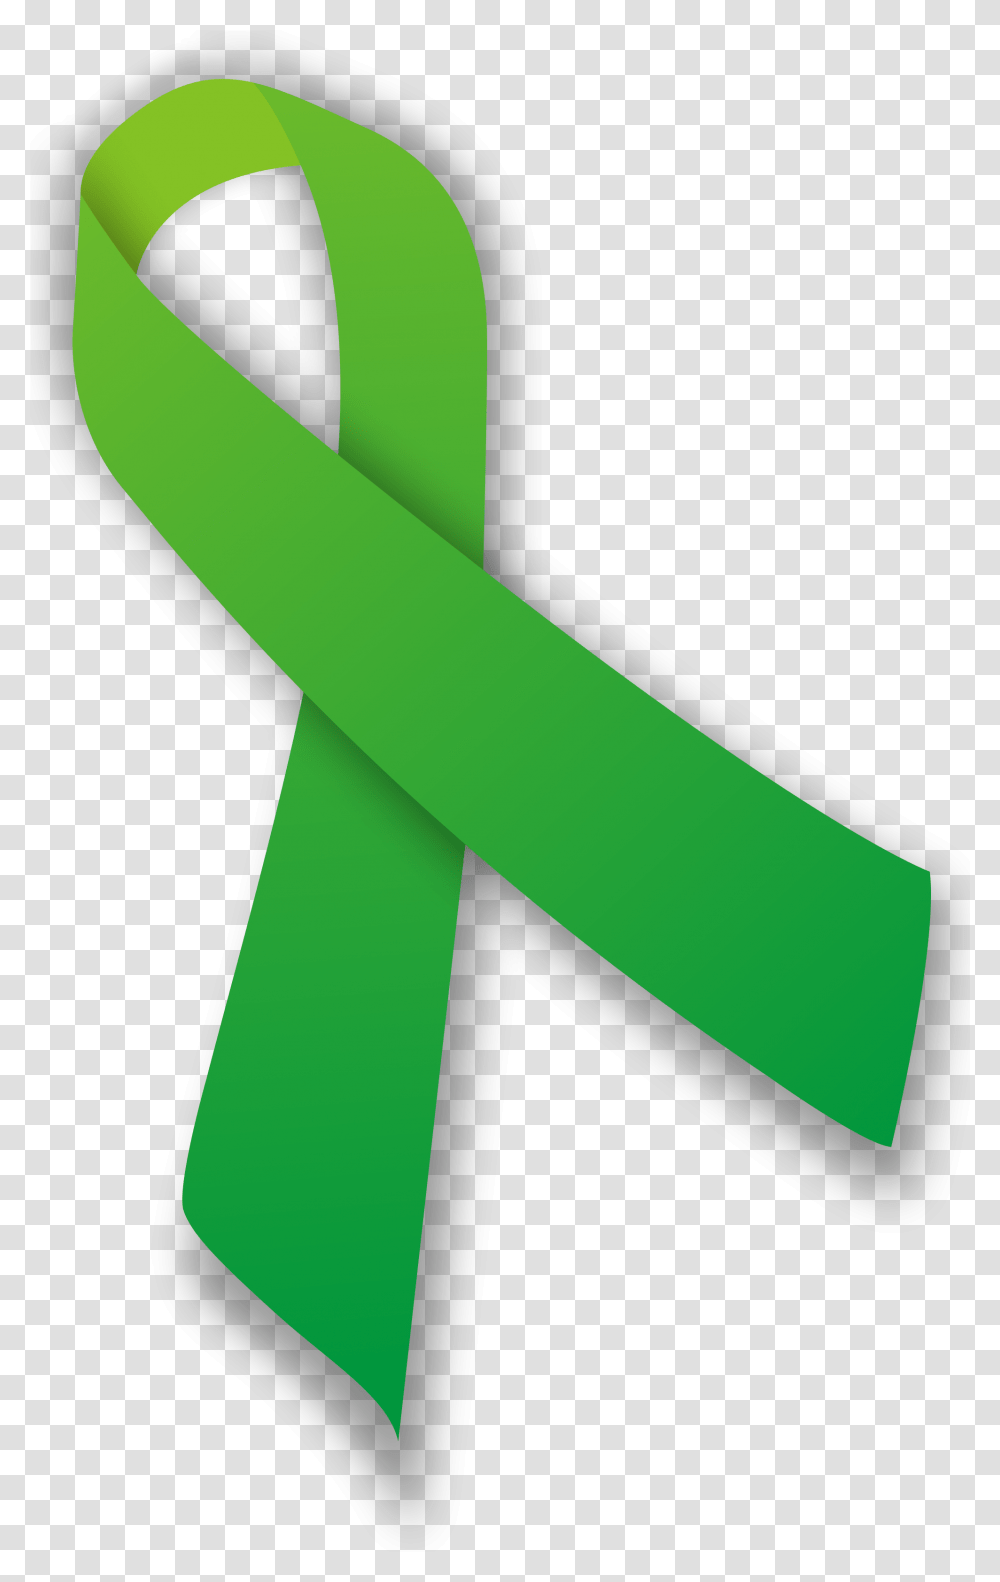 Green Ribbon 3 Image Anxiety And Depression Ribbon, Cylinder, Sash Transparent Png